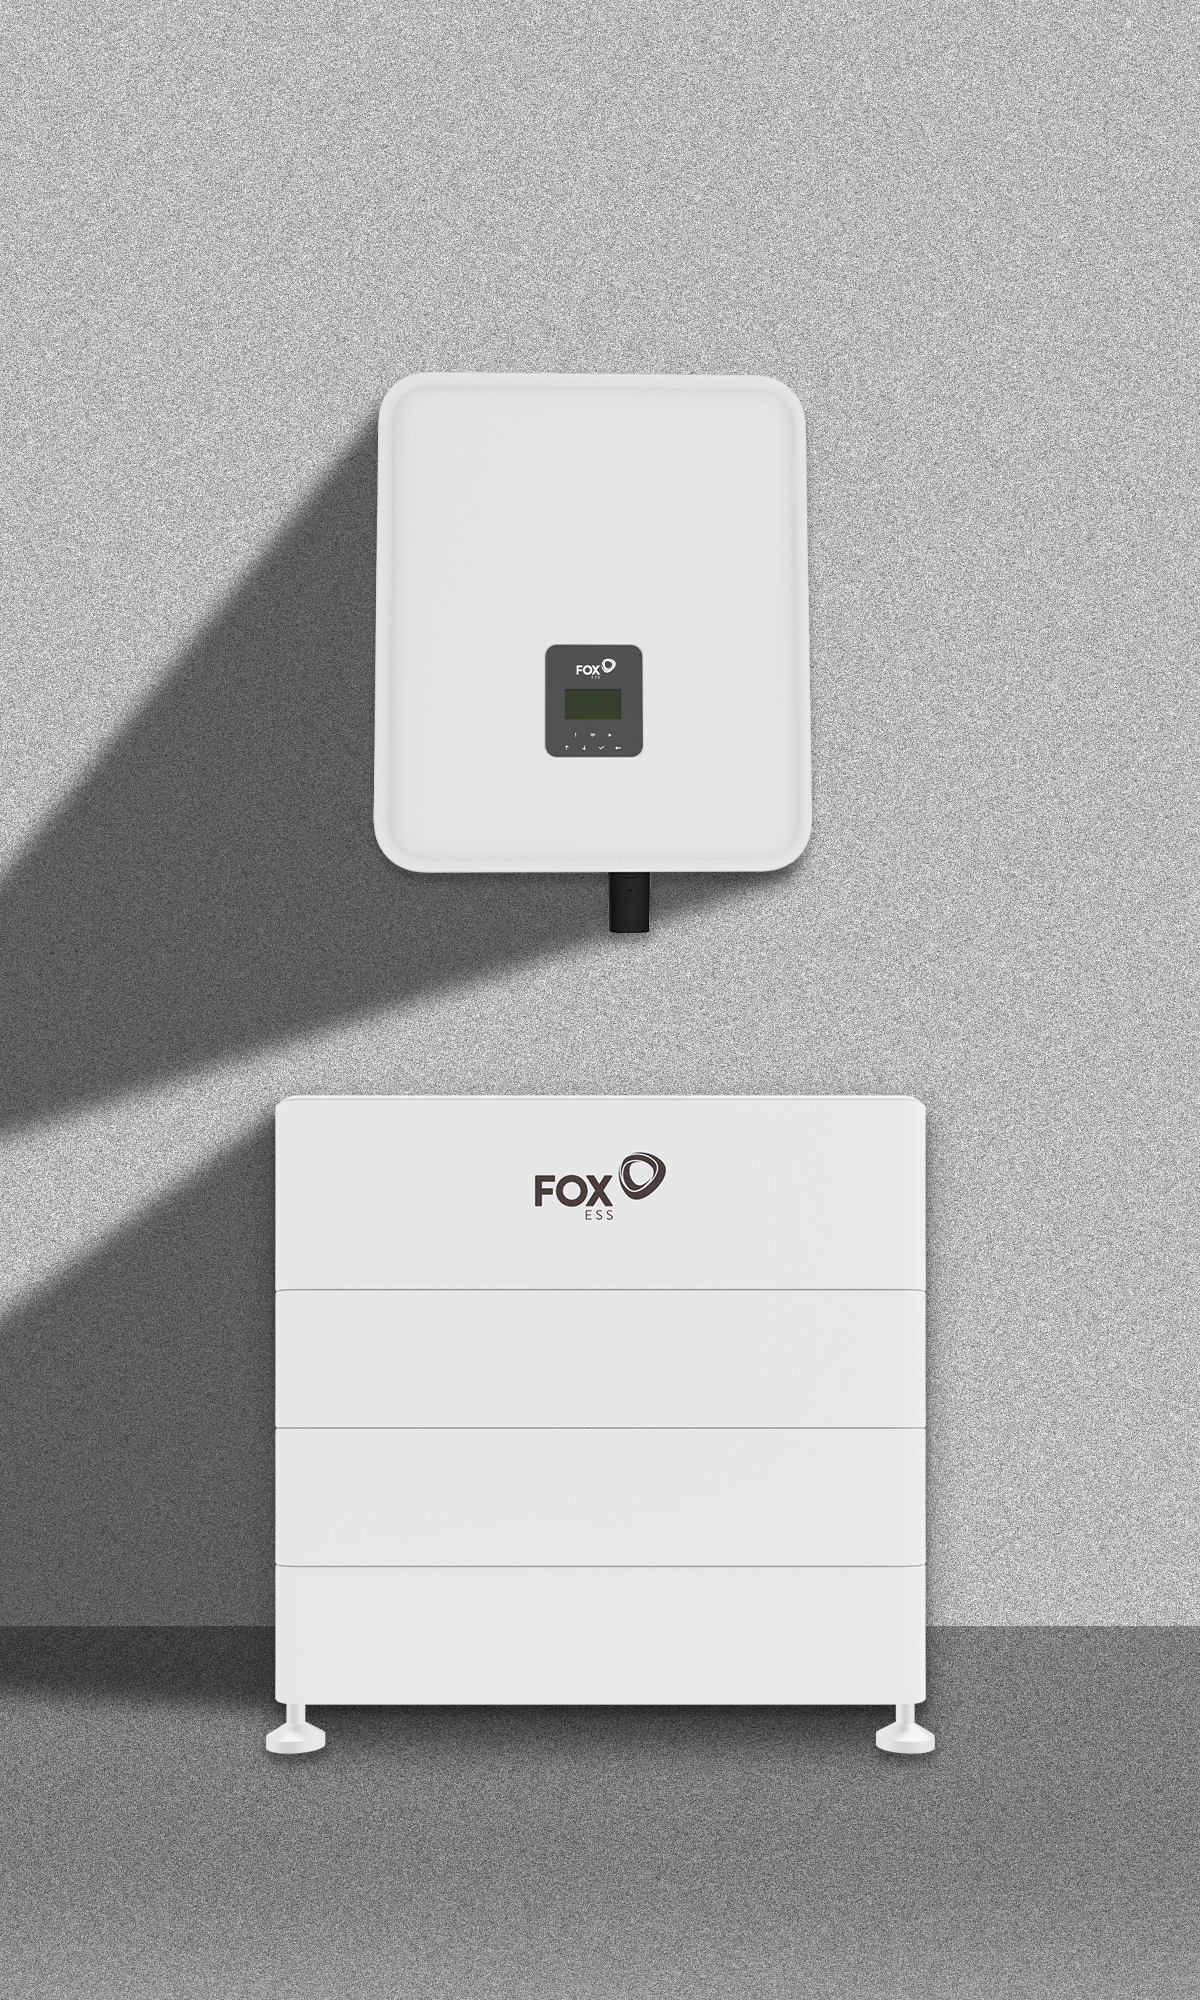 Inversor fotovoltaico e bateria da Fox. Foto: FoxESS/Divulgação